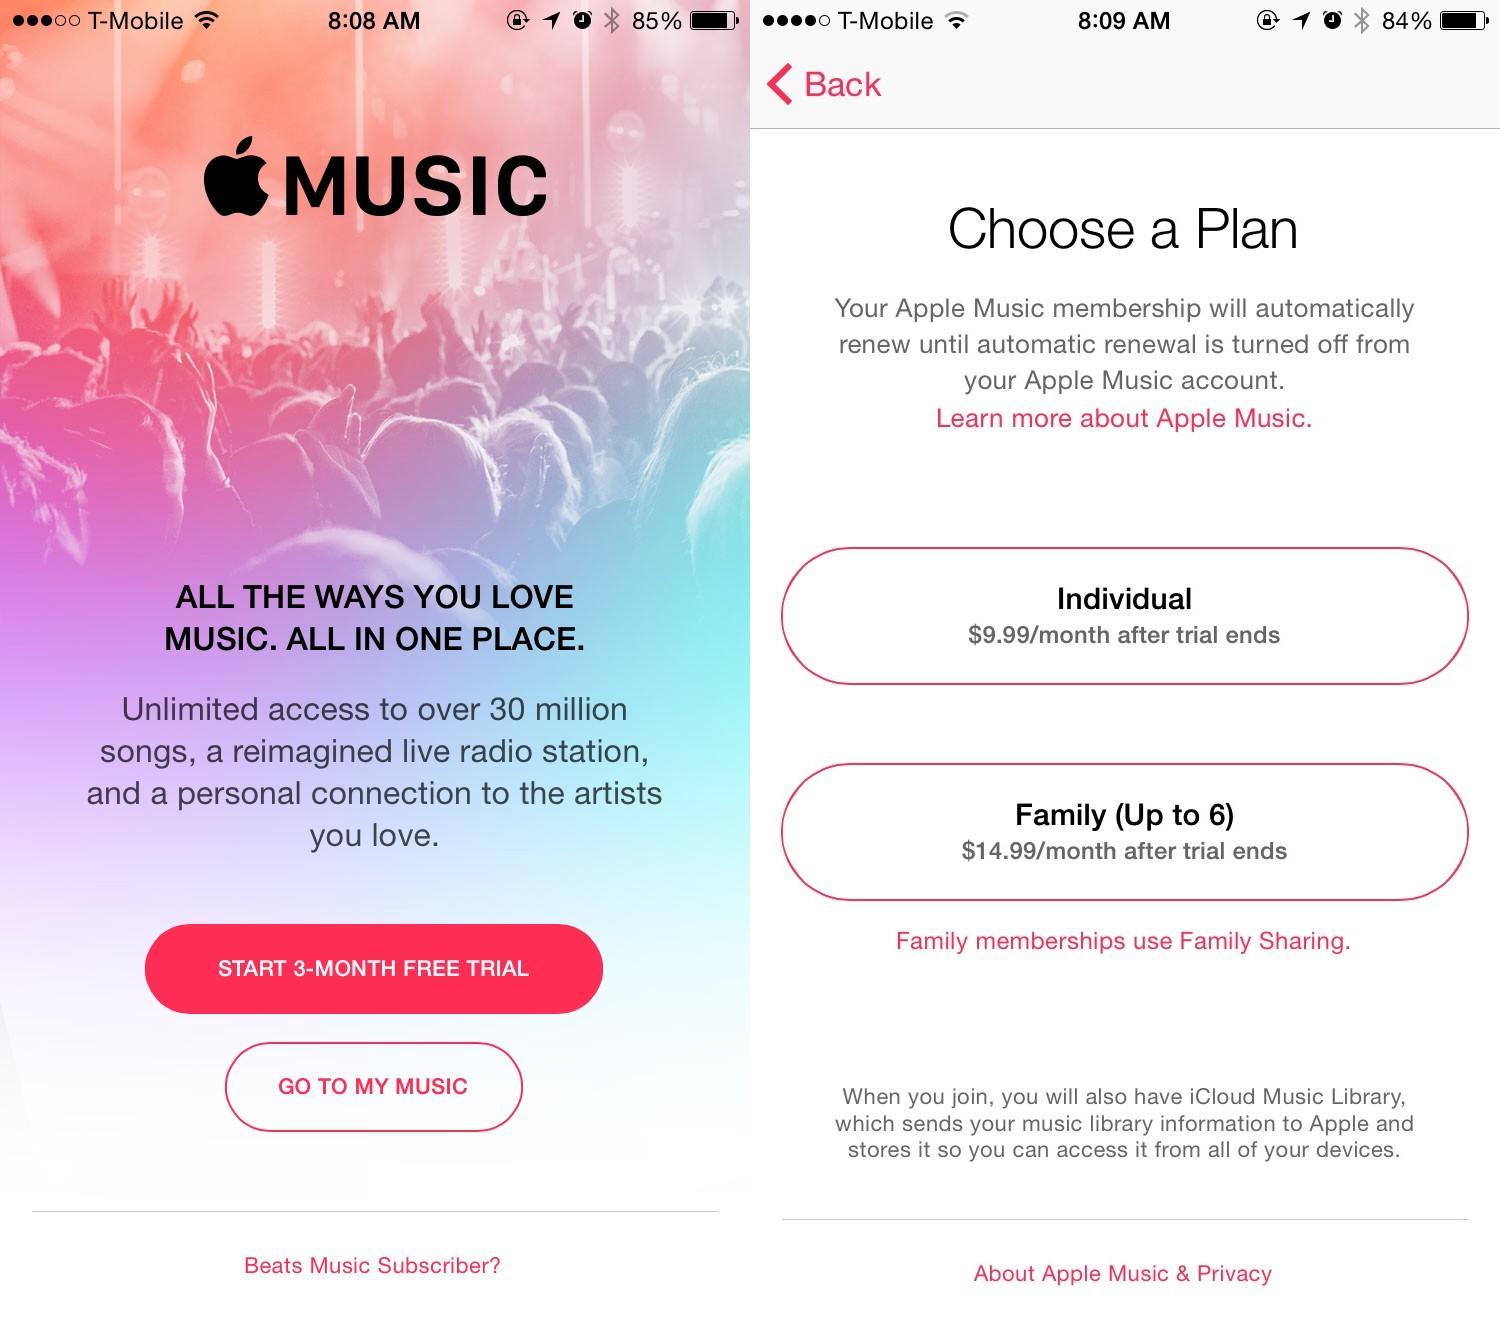  Apple Musicは月額9.99だが、無料試用期間がある。